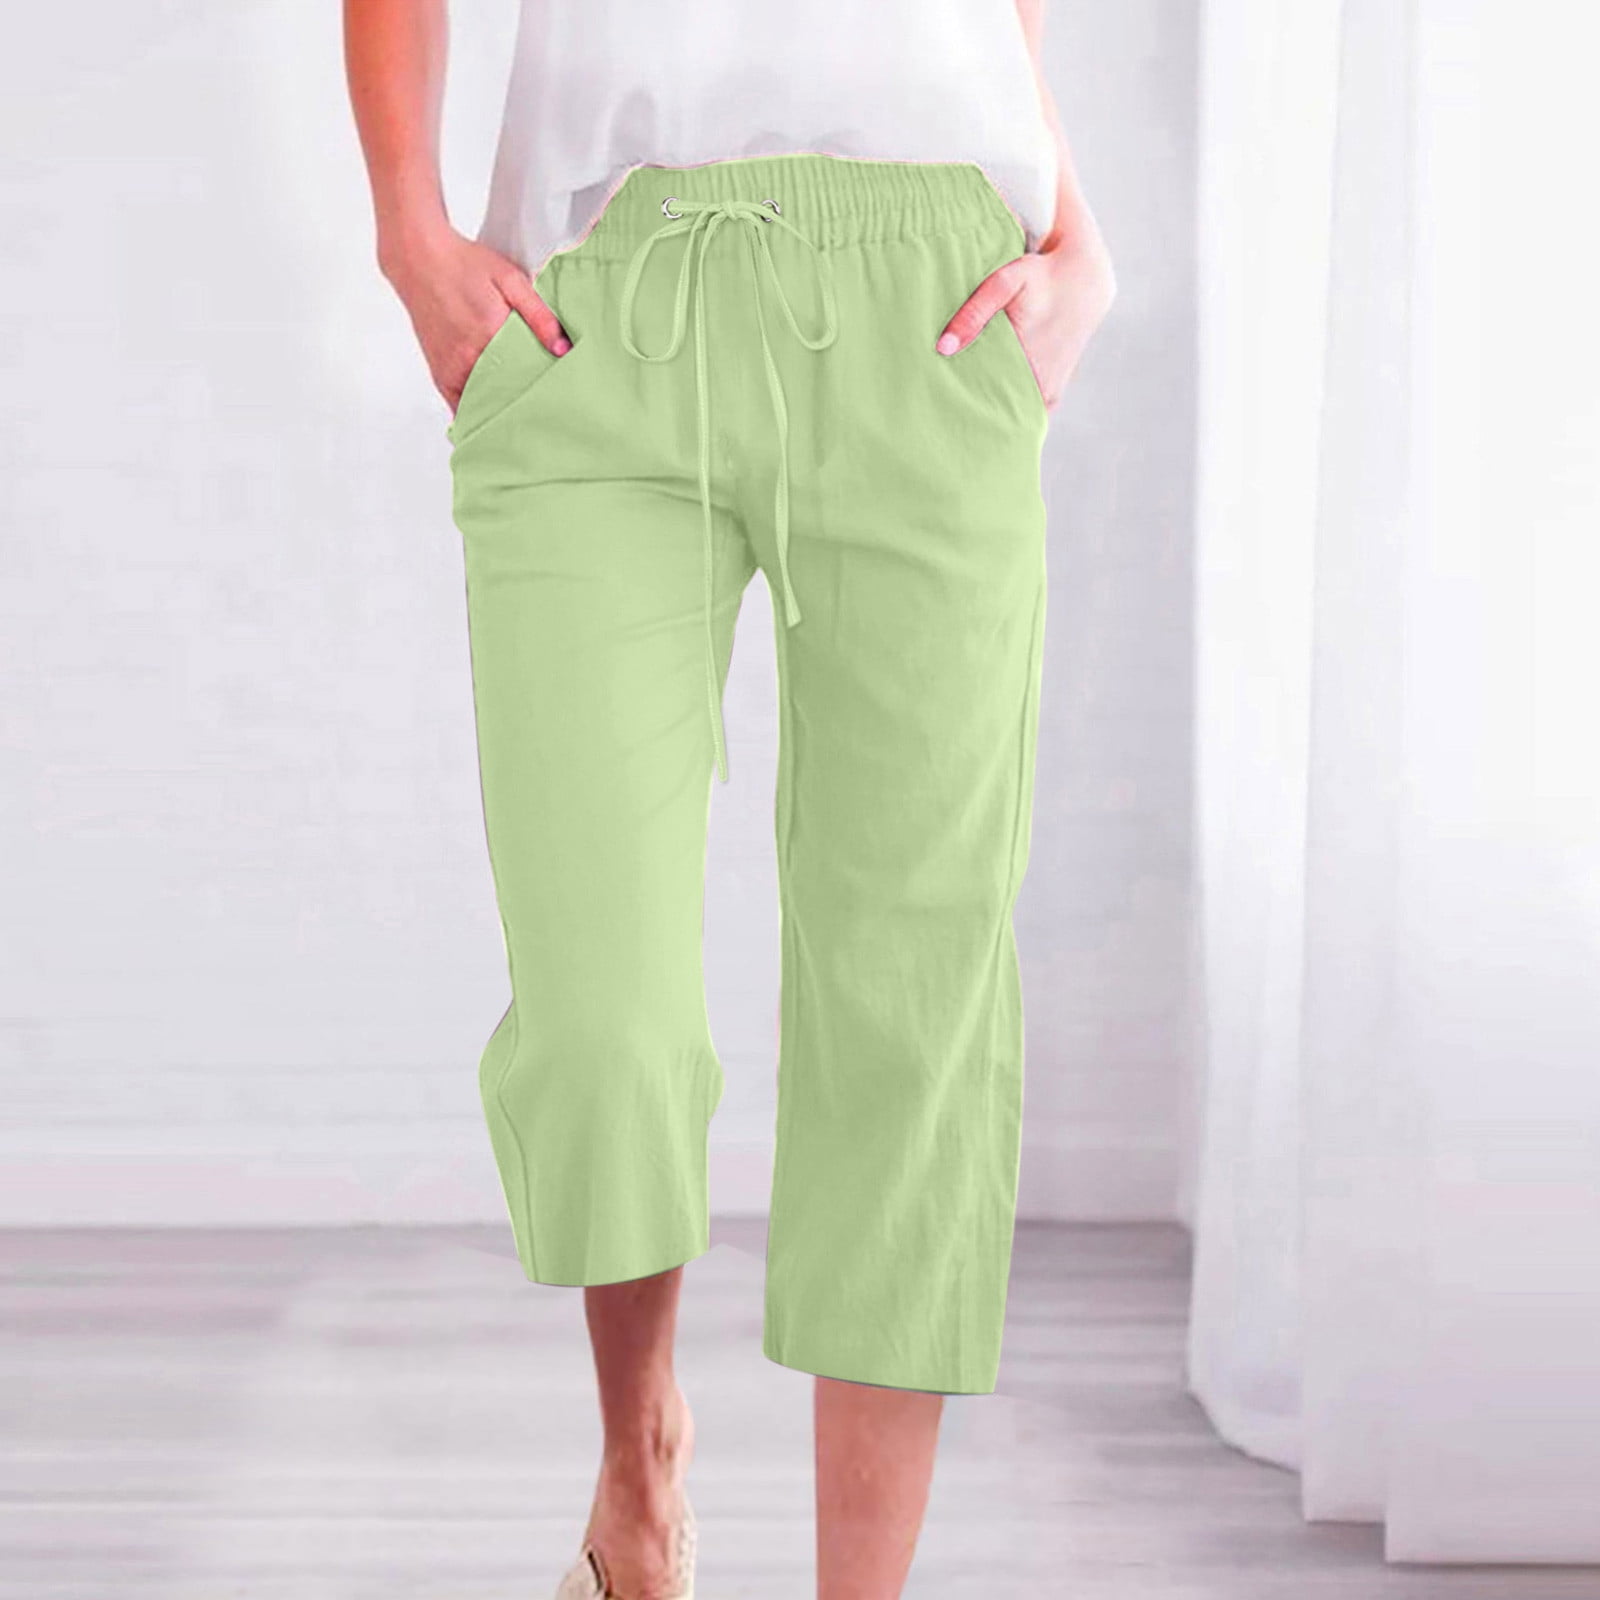 Women's Cotton Linen Capri Pants Sale Plus Size Casual Drawstring